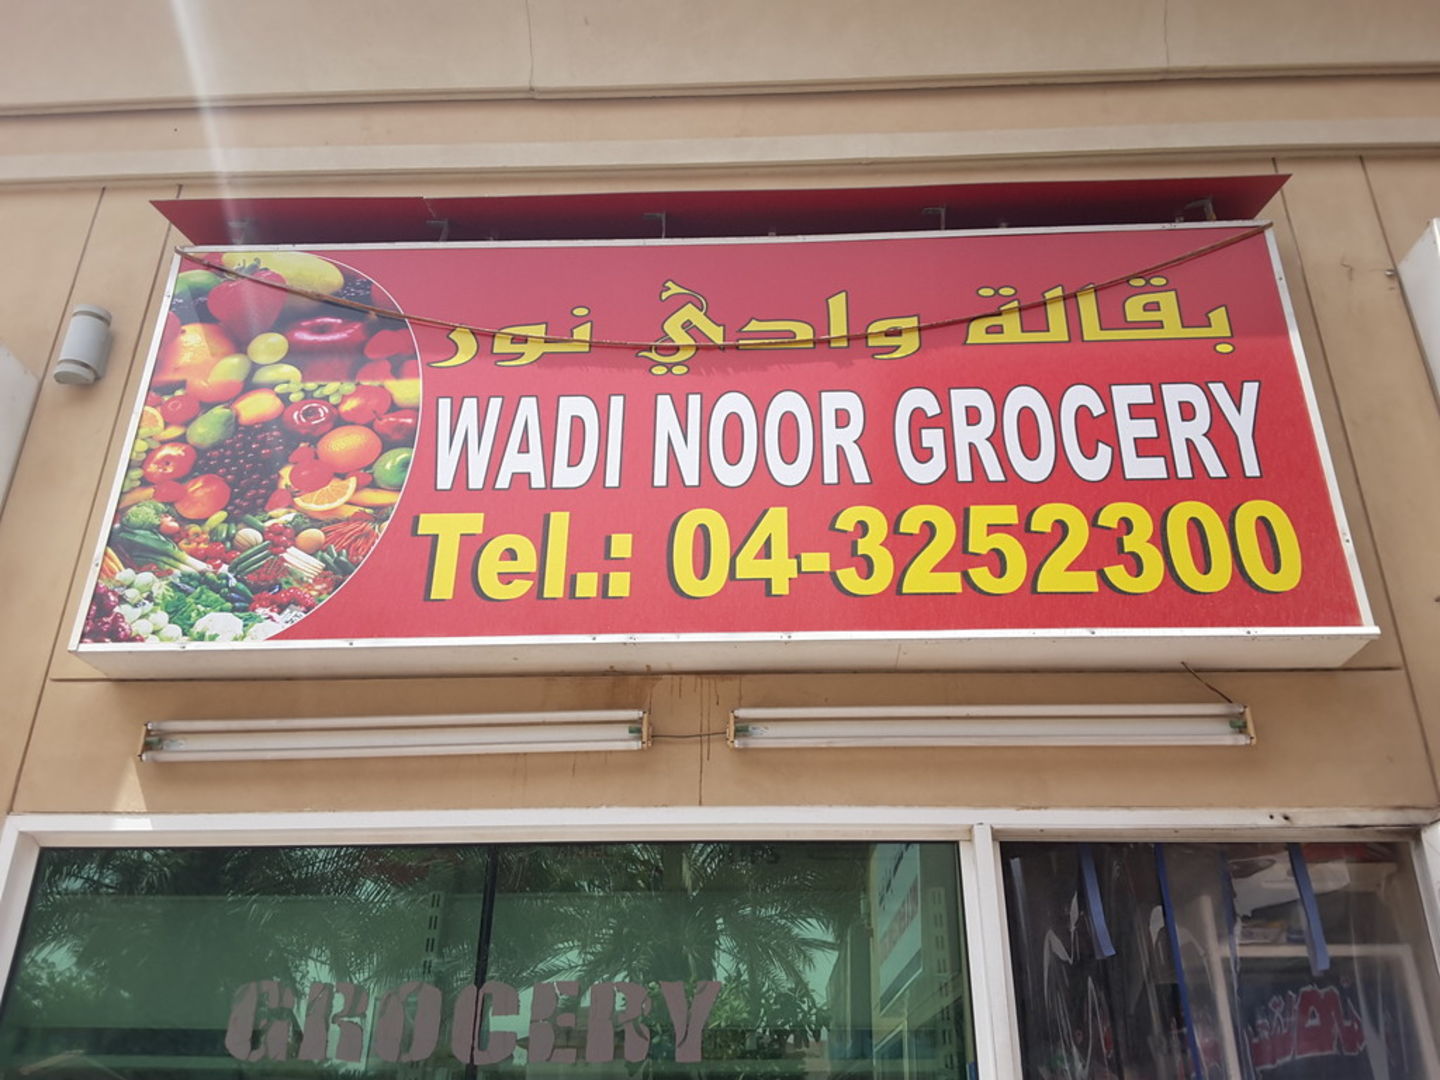 Wadi Noor Grocery